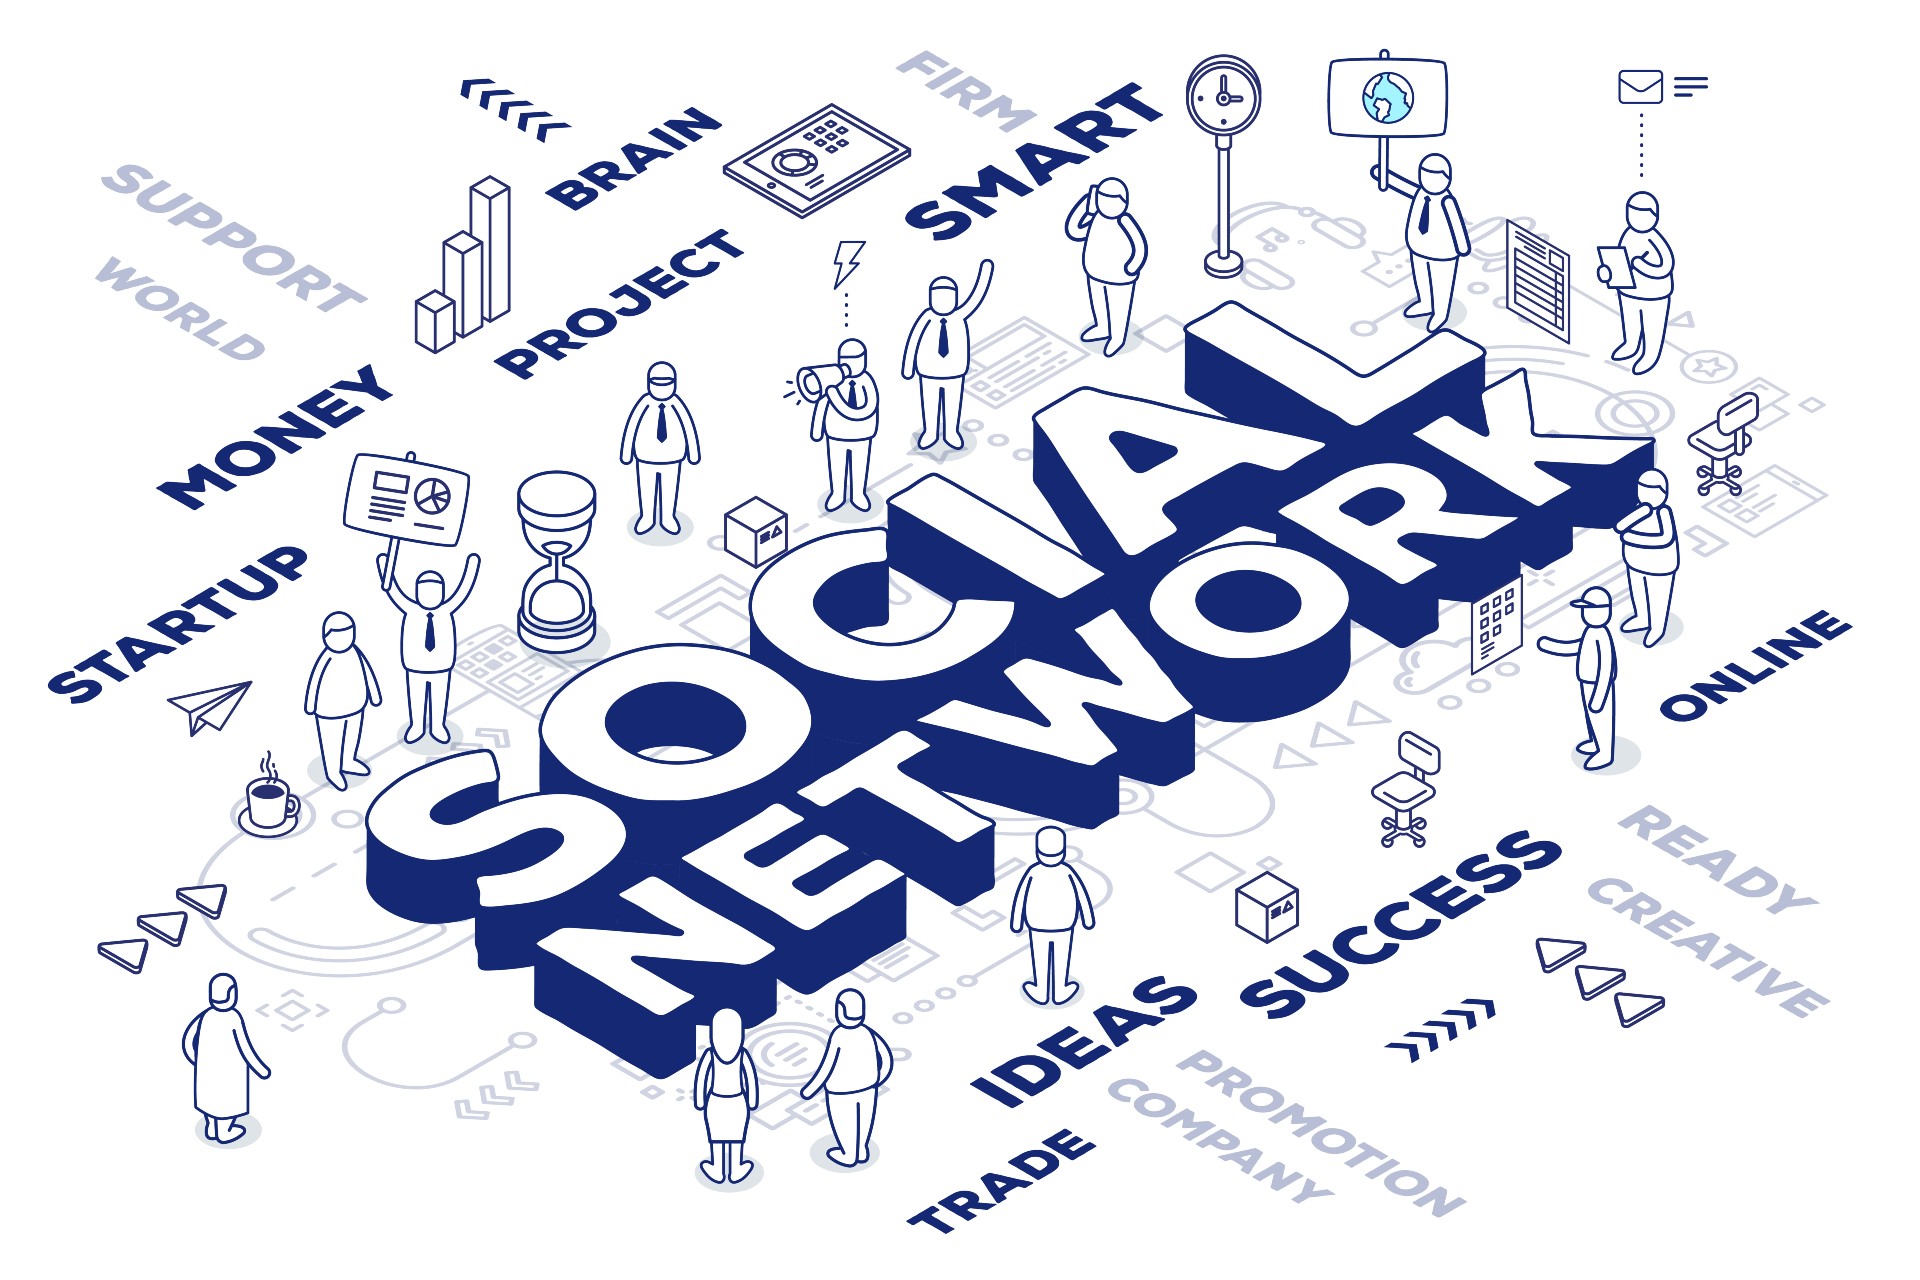 Novine.ba društvene mreže u javnom sektoru